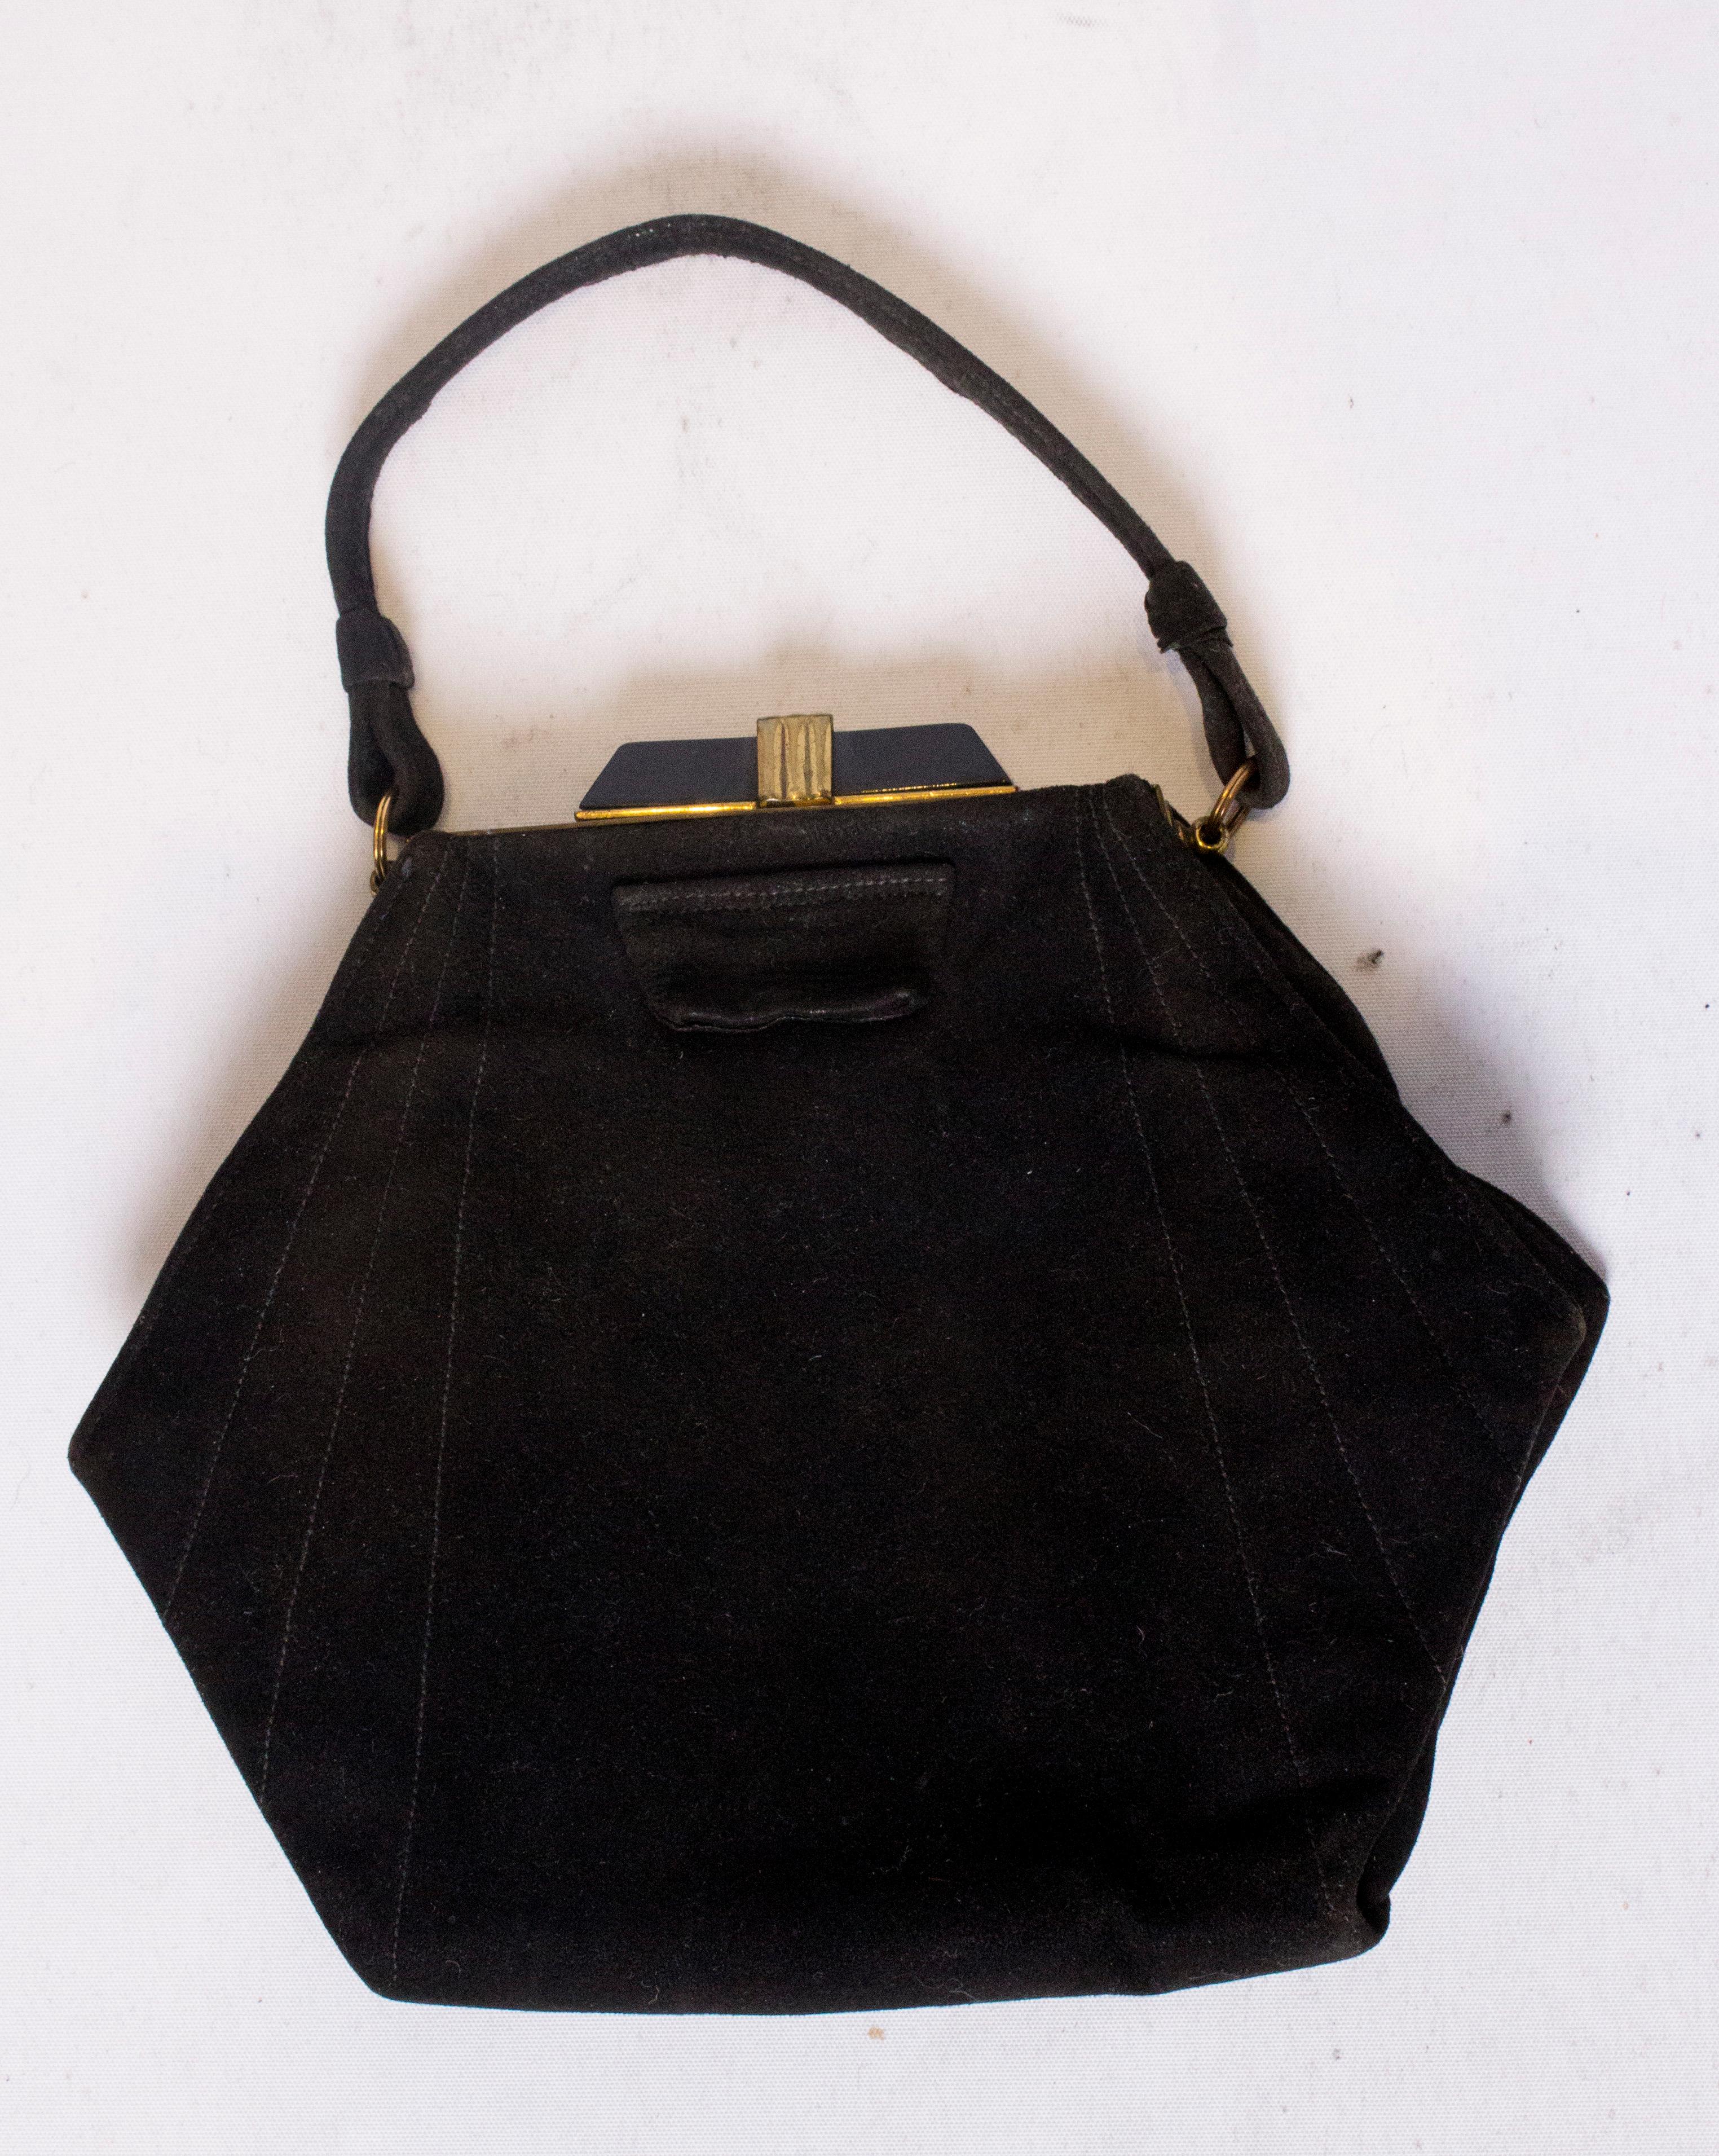 Un sac à main Art déco chic de forme hexagonale en daim noir. Le sac est doté d'un fermoir décoratif art déco et est doublé de tissu avec une pochette intérieure et une bourse intégrée.
Dimensions : largeur 8'', hauteur 7'', profondeur 2''.